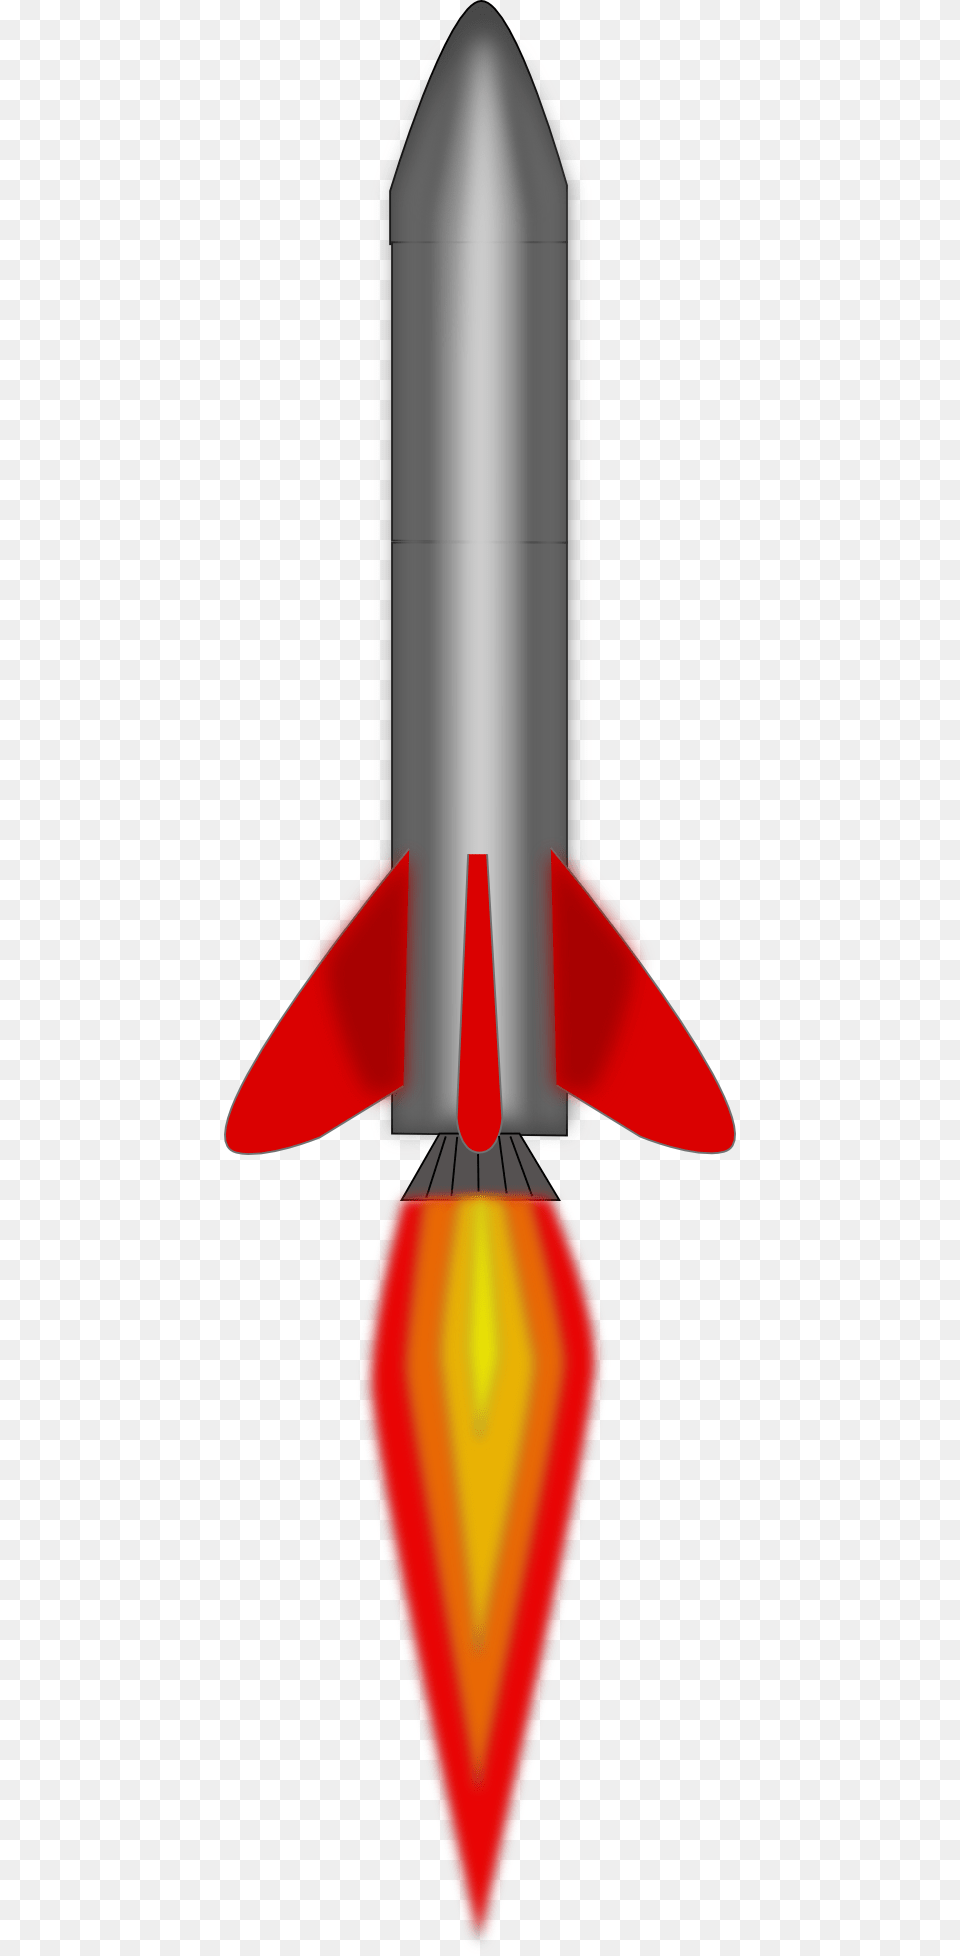 Free Rocket Images, Ammunition, Missile, Weapon Png Image